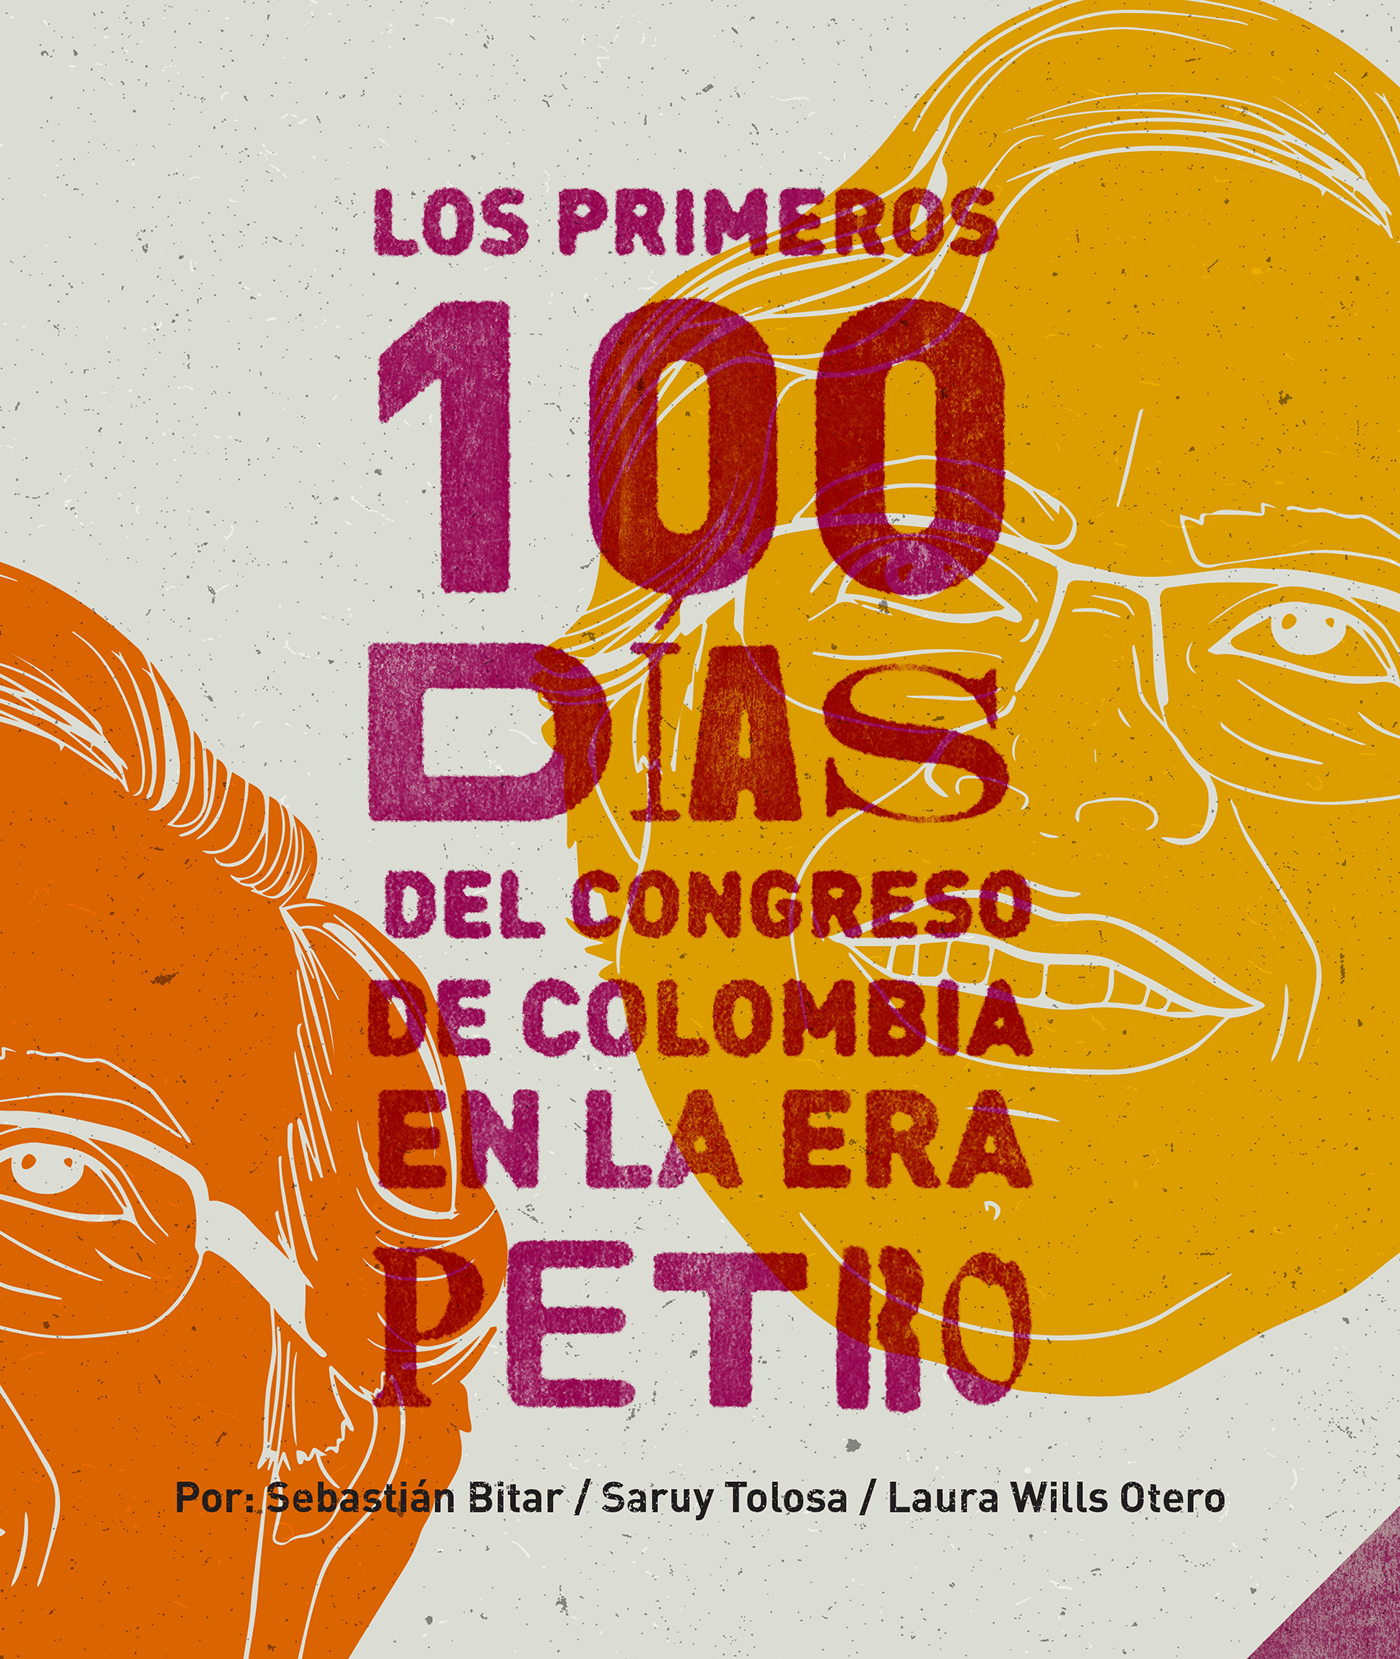 campanha colombia Petro Politica